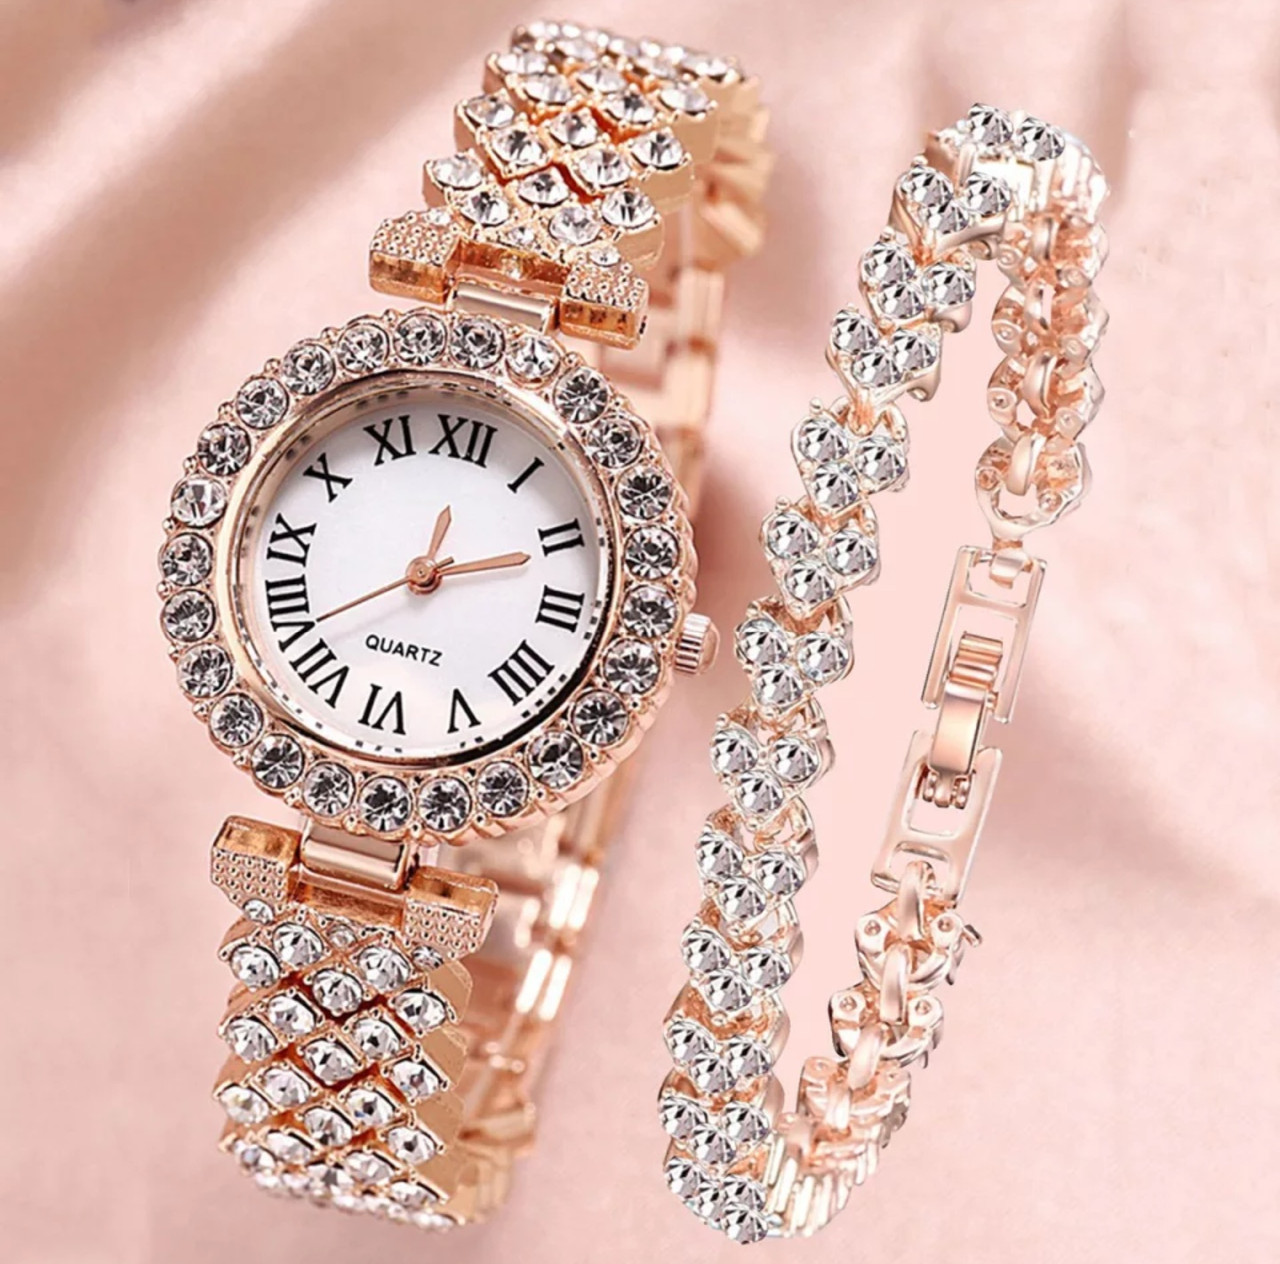 Жіночий годинник у комплекті з браслетом